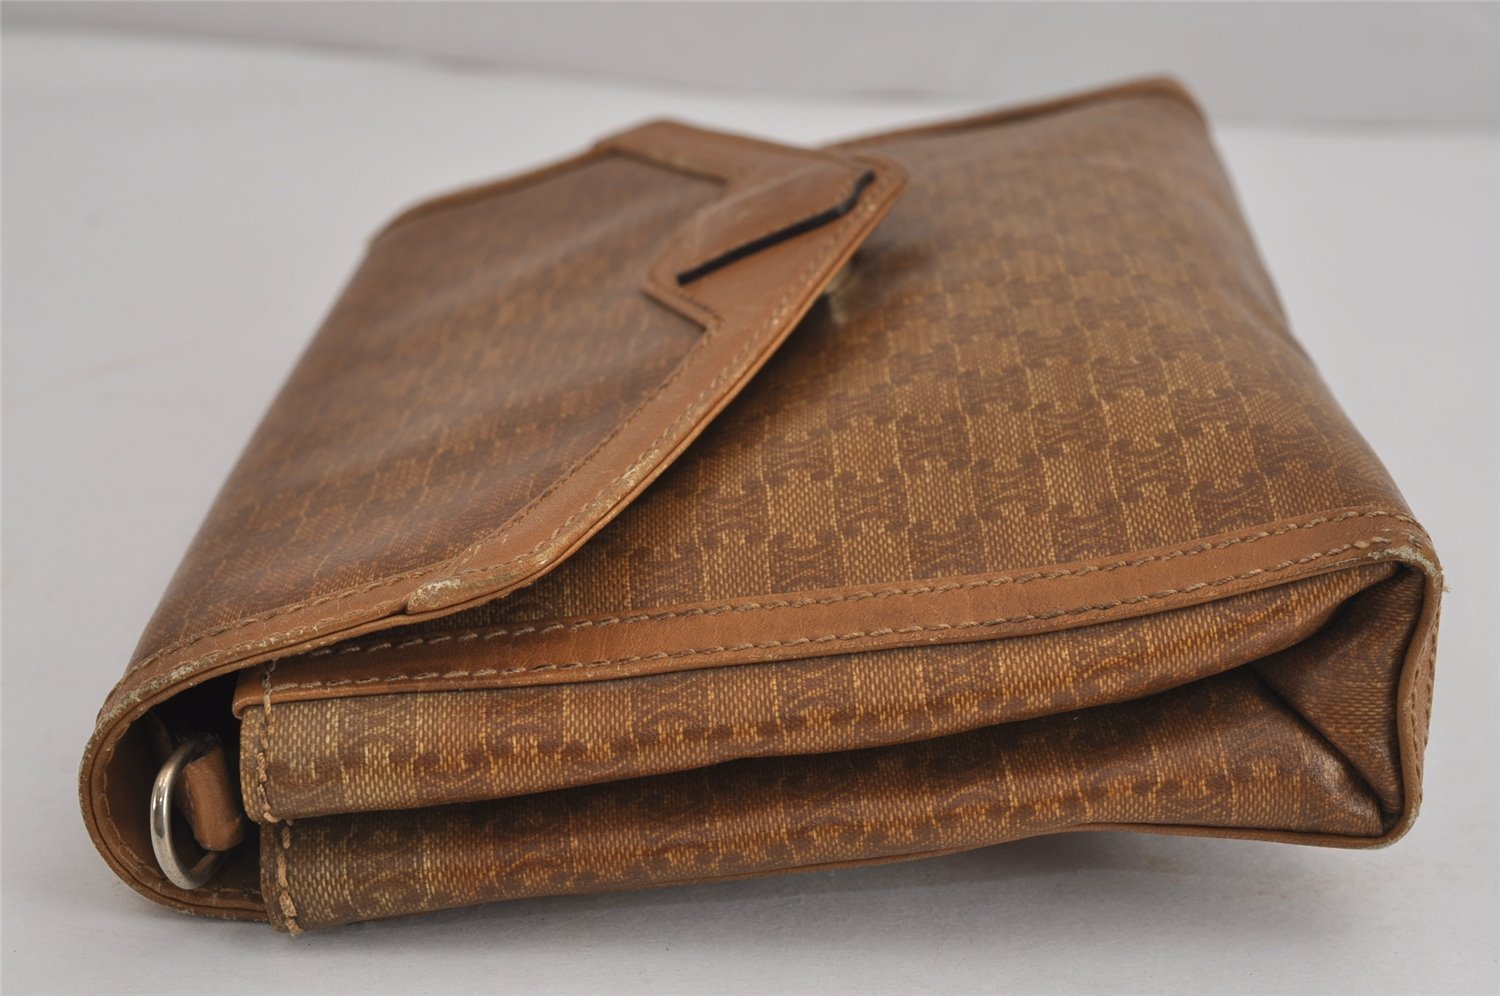 Authentic CELINE Macadam Blason 2Way Shoulder Bag PVC Leather Brown Junk 4035J